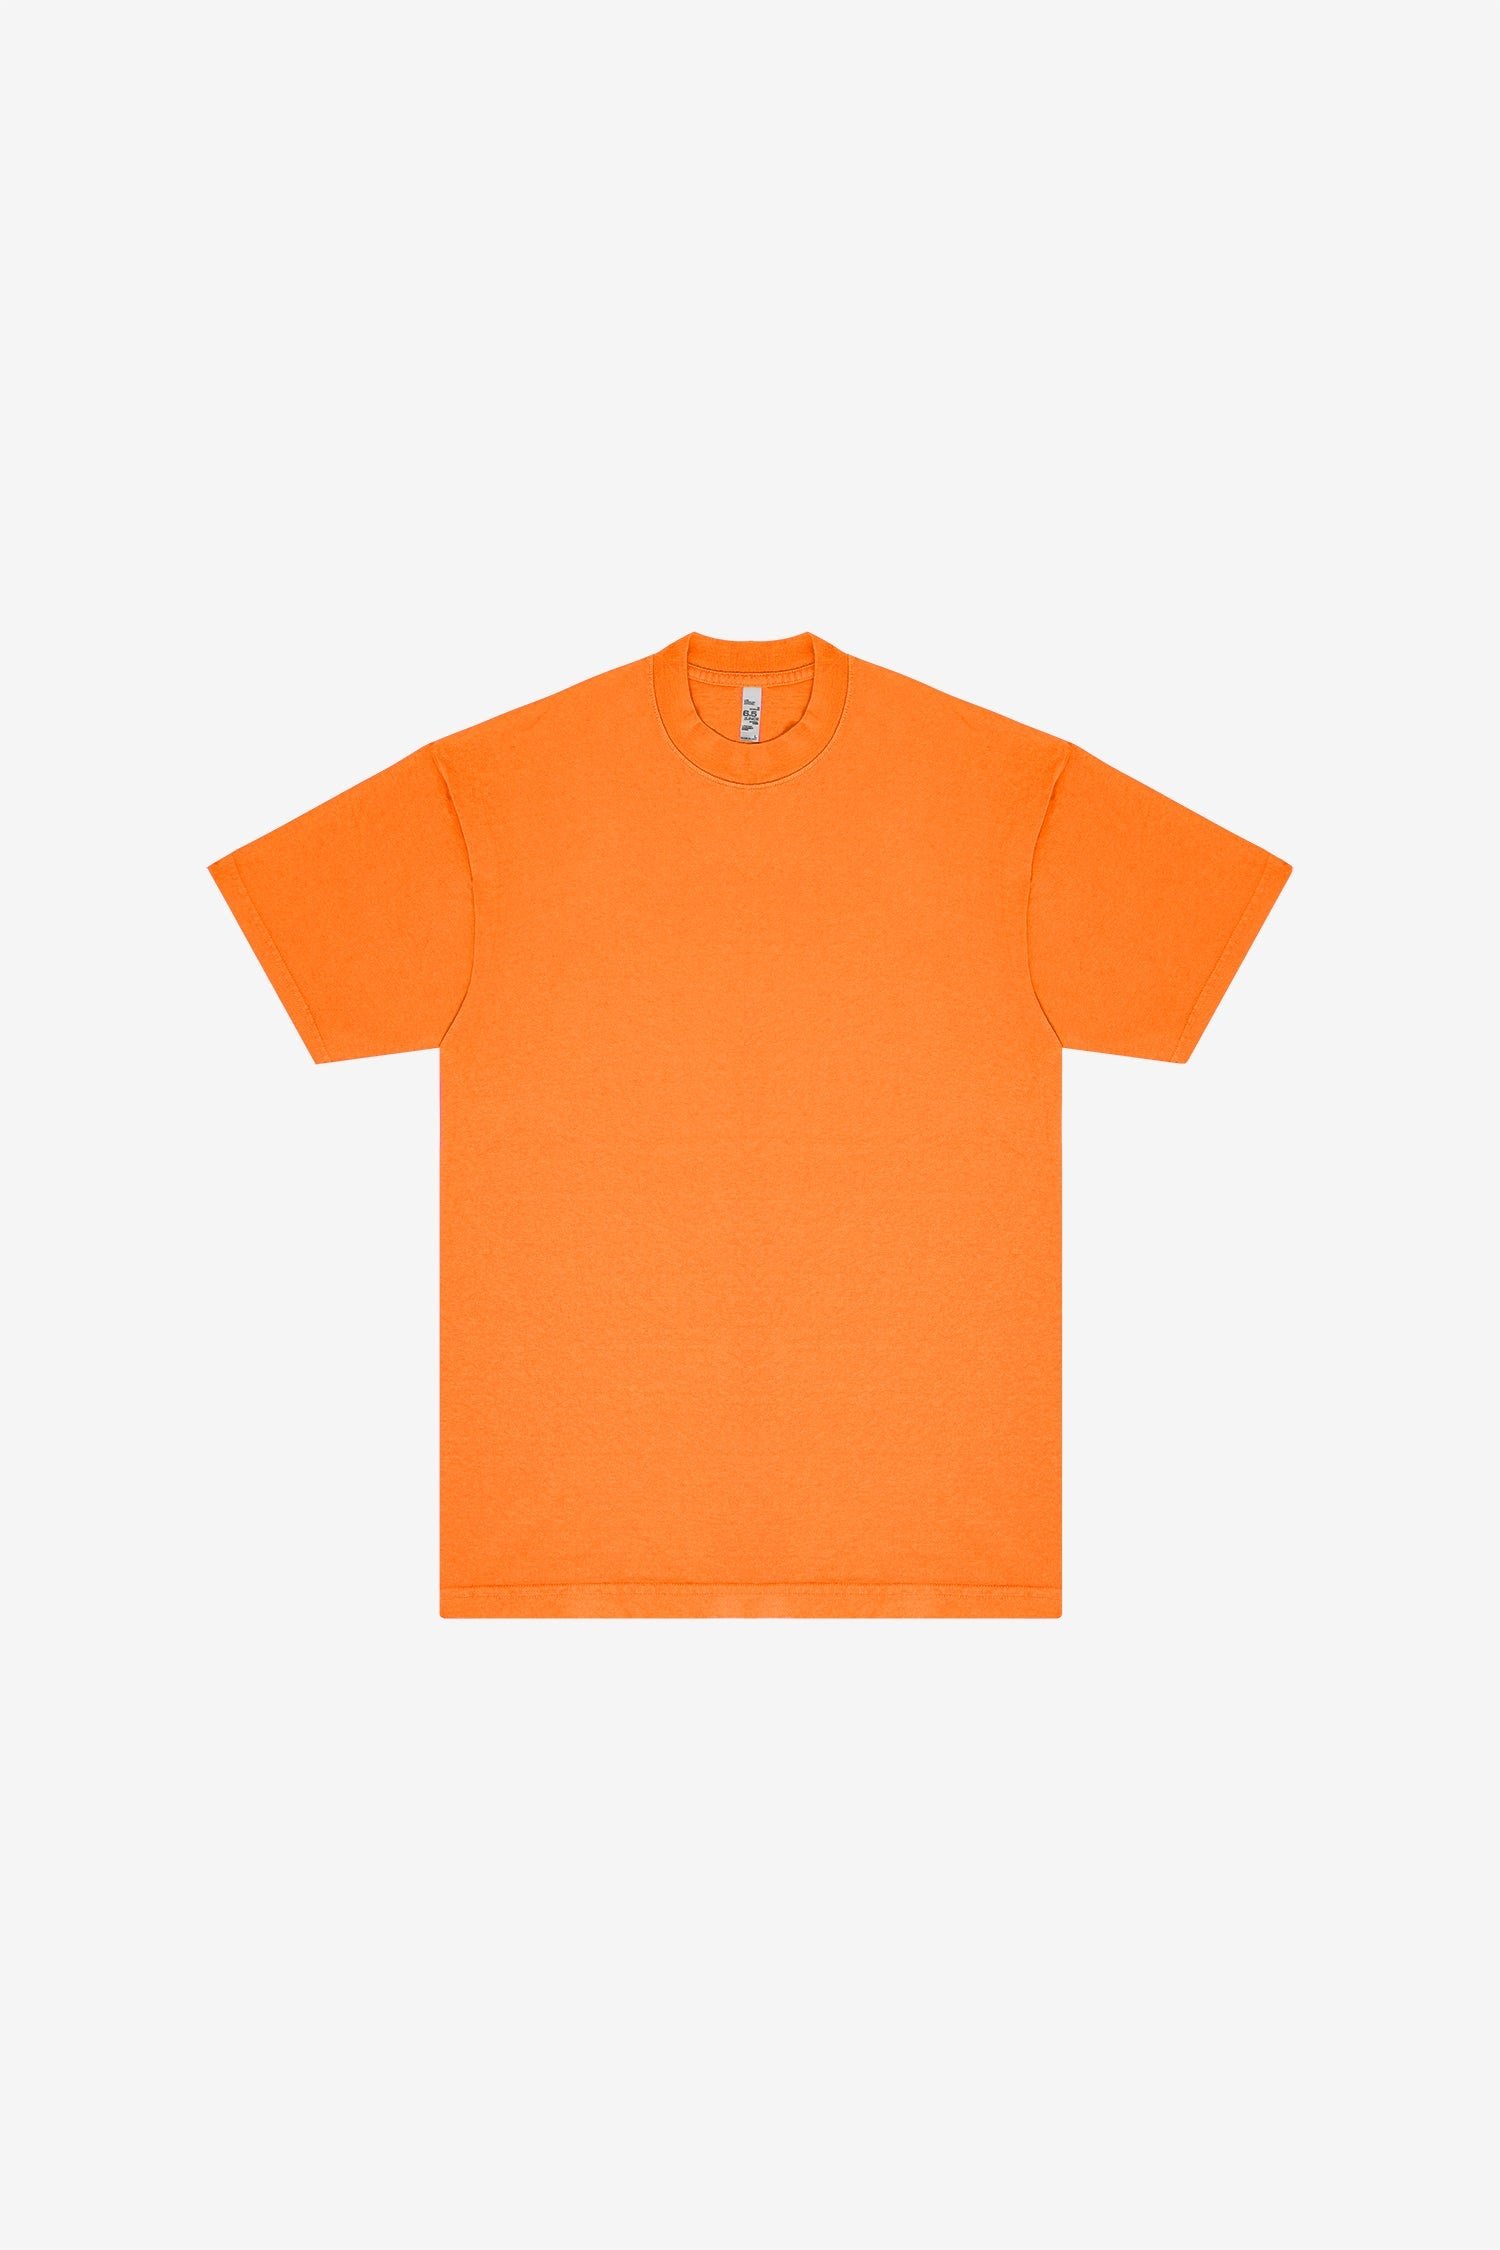 1801NEON - 6.5oz Garment Dye Crew Neck T-Shirt (NEONS) - Neon Orange / L